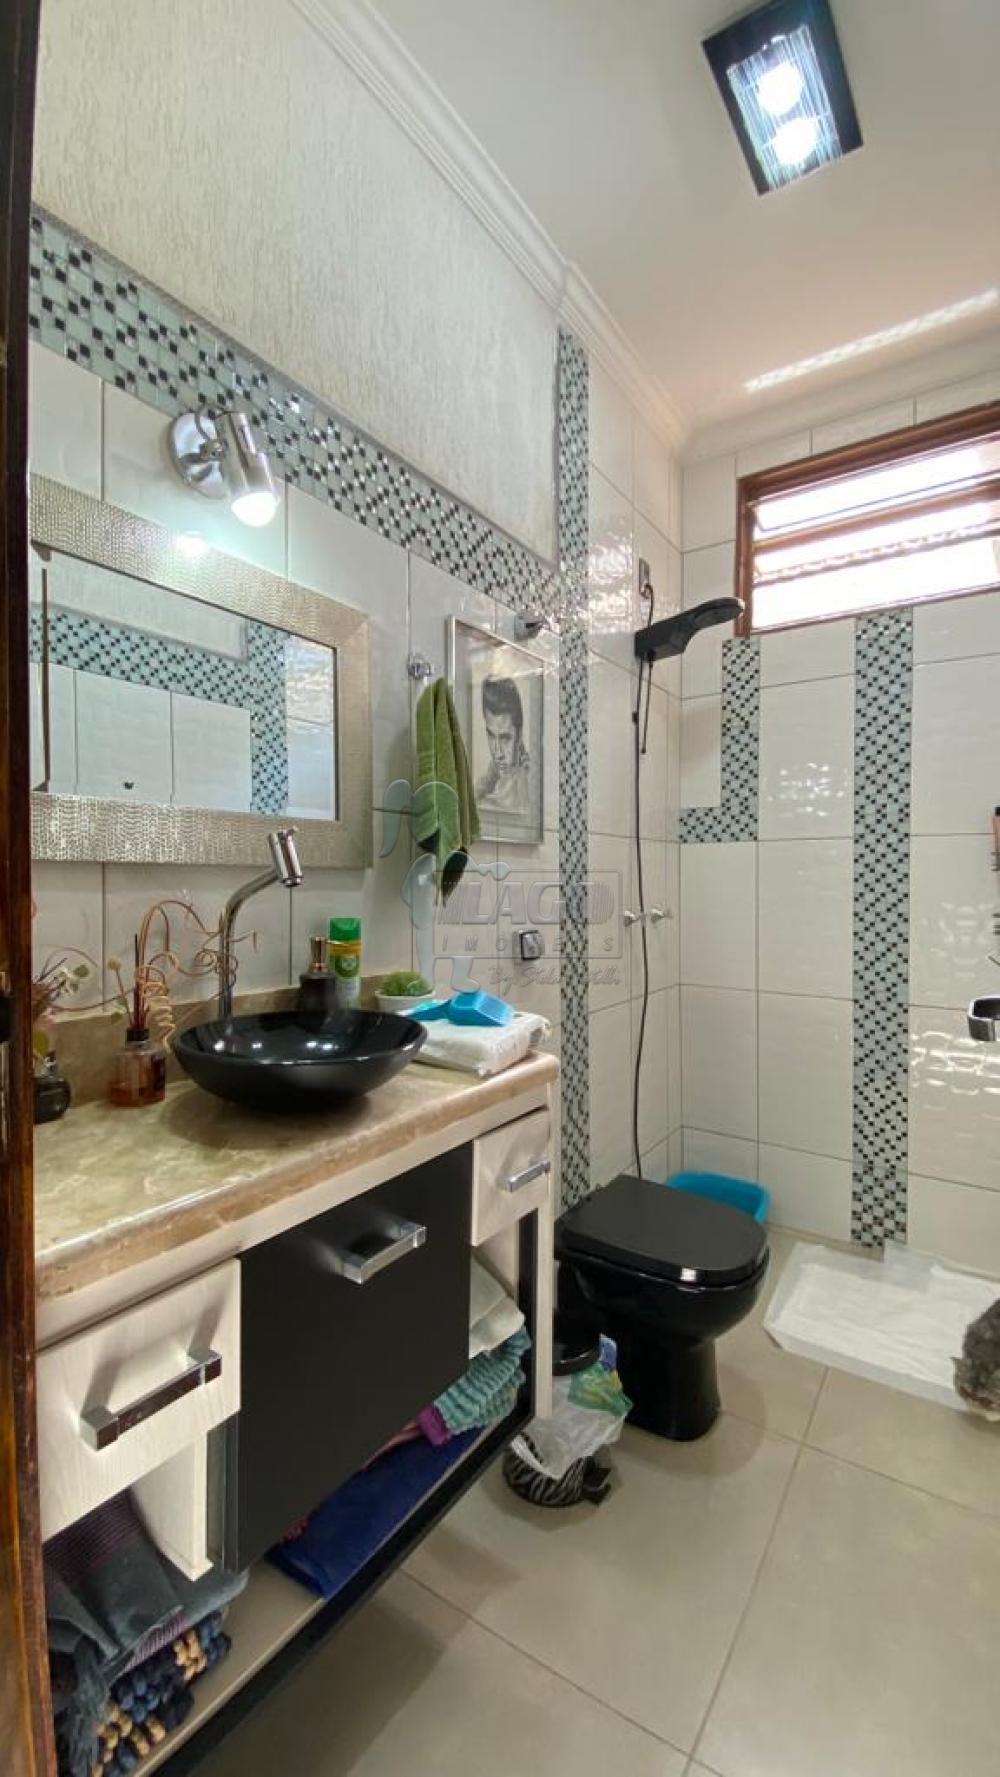 Comprar Casa / Padrão em Ribeirão Preto R$ 320.000,00 - Foto 10